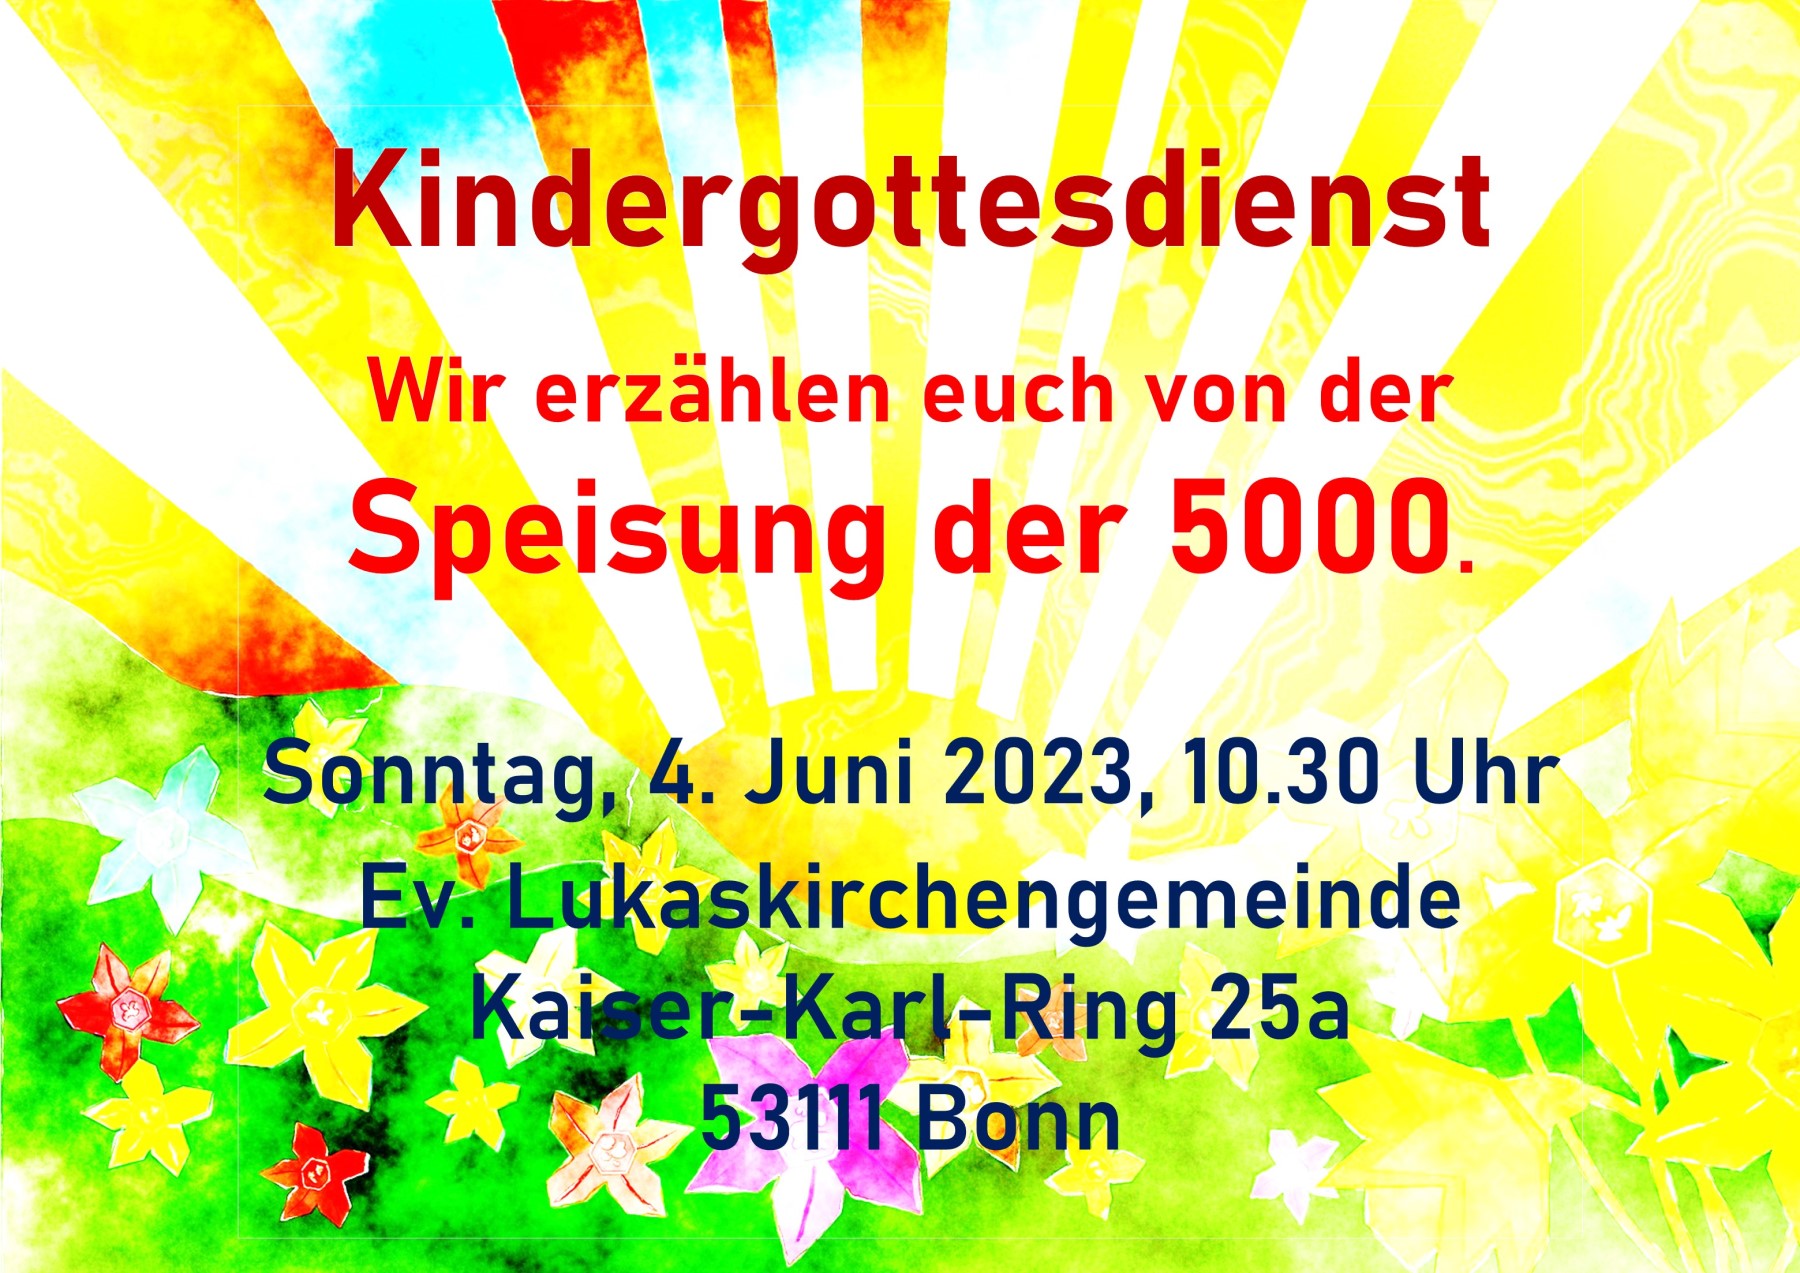 Kindergottesdienst am Sonntag, 04. Juni 2023, inder Evangelischen Lukaskirchengemeinde, Kaiser-Karl-Ring 25a. Wir erzählen euch von der Speisung der 5000.